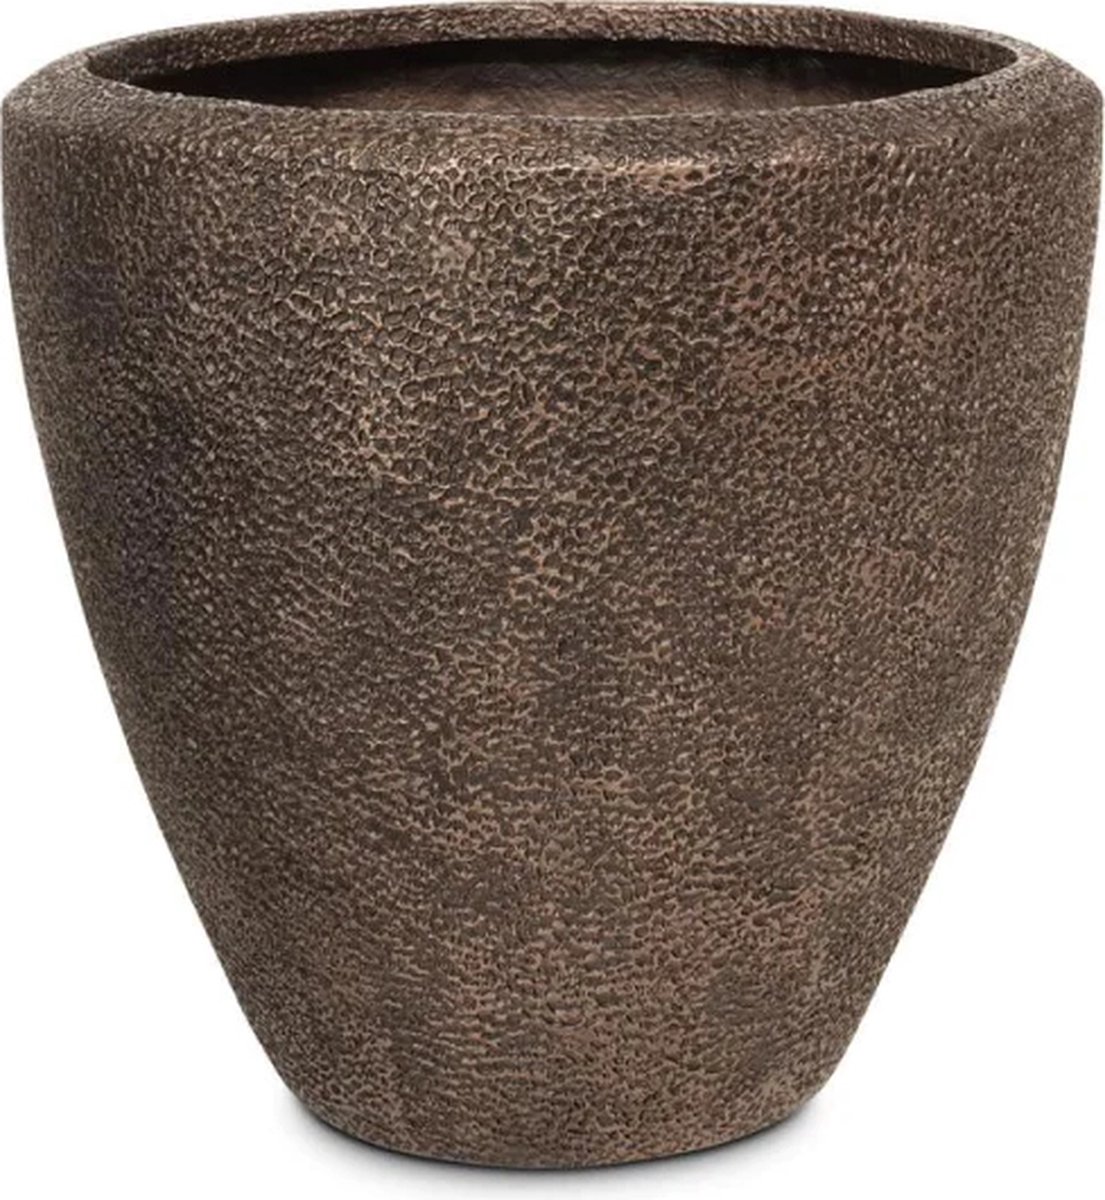 Luxe Plantenpot XL | Koper Brons Look | Antiek Design | Grote bloembak voor binnen en buiten | Koraal Brons Plantenbak | Ronde Bloempot | Vorstbestendig 67 x 67 cm